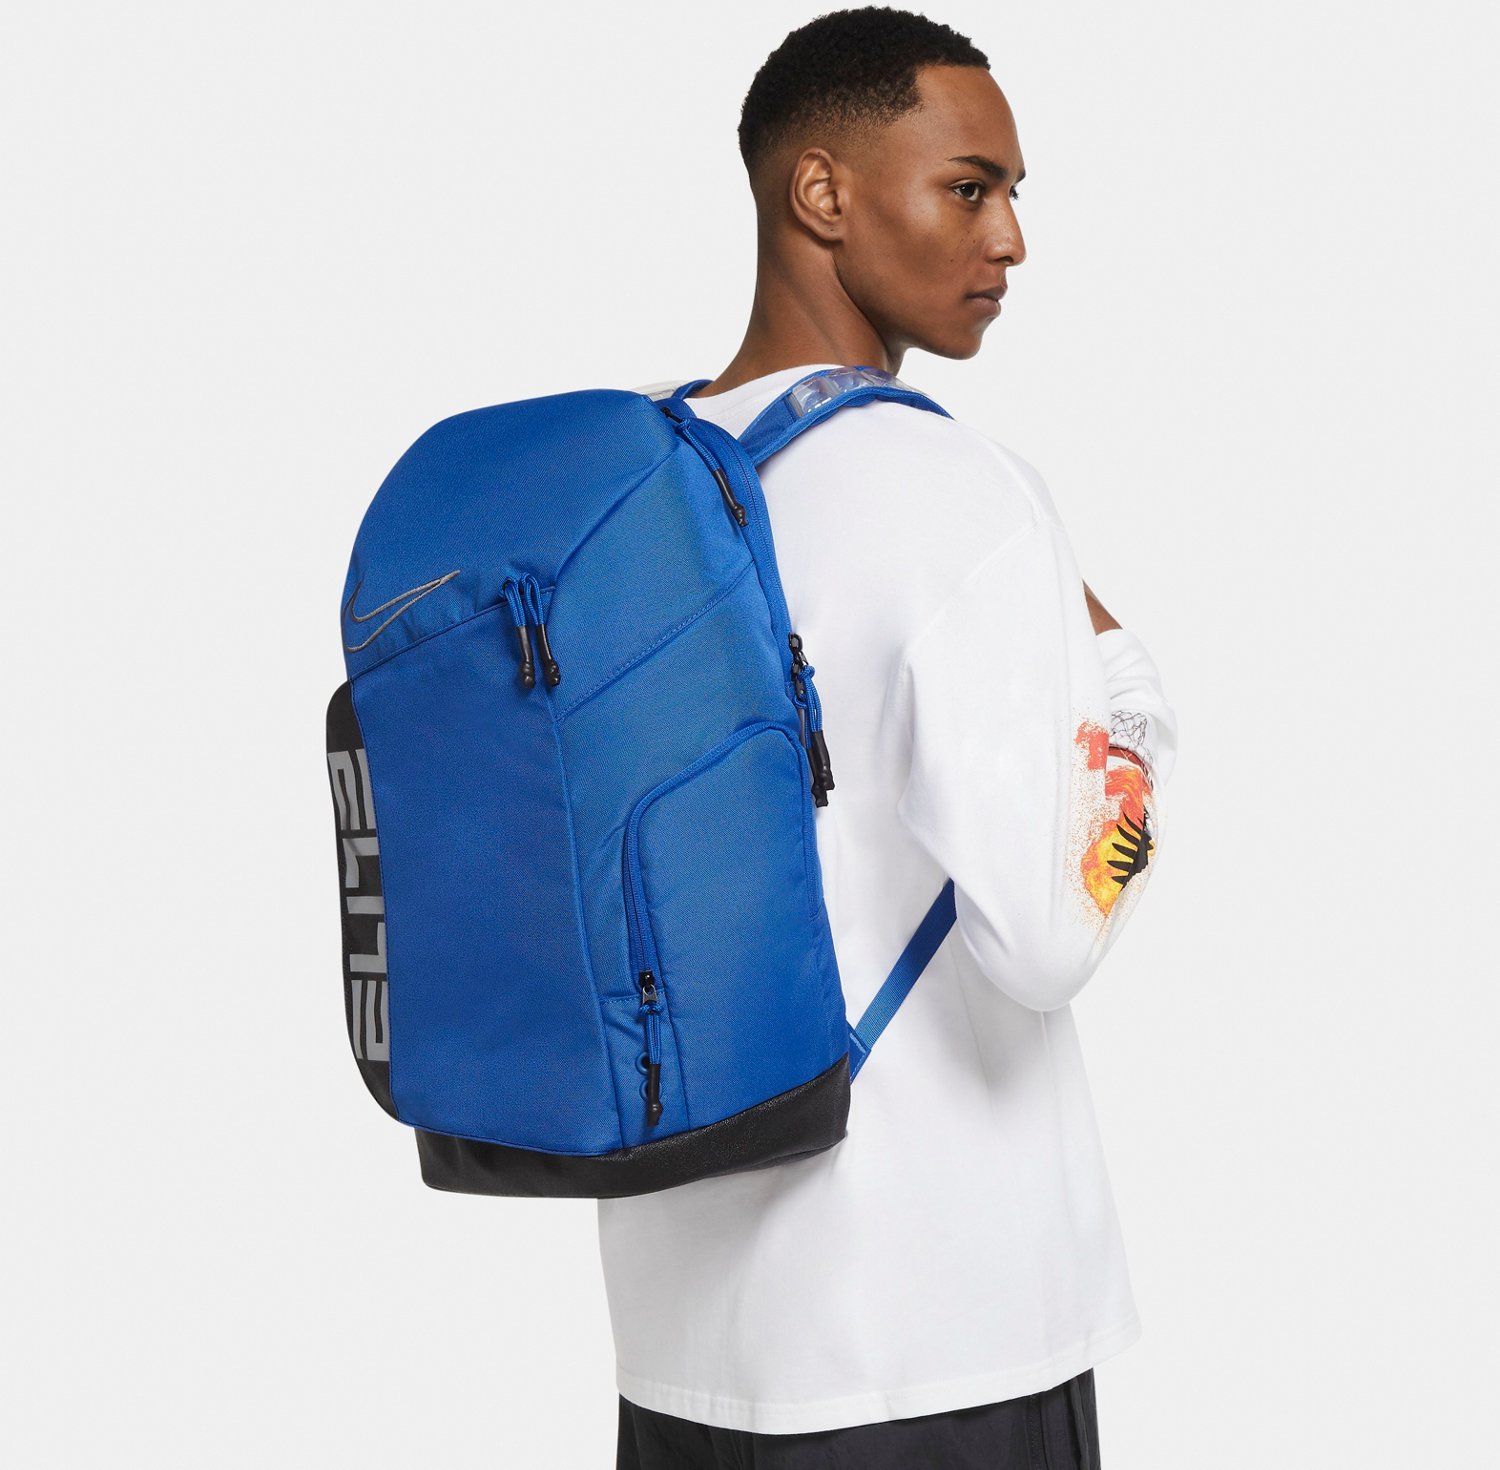 Nike Elite Pro Backpack 34L